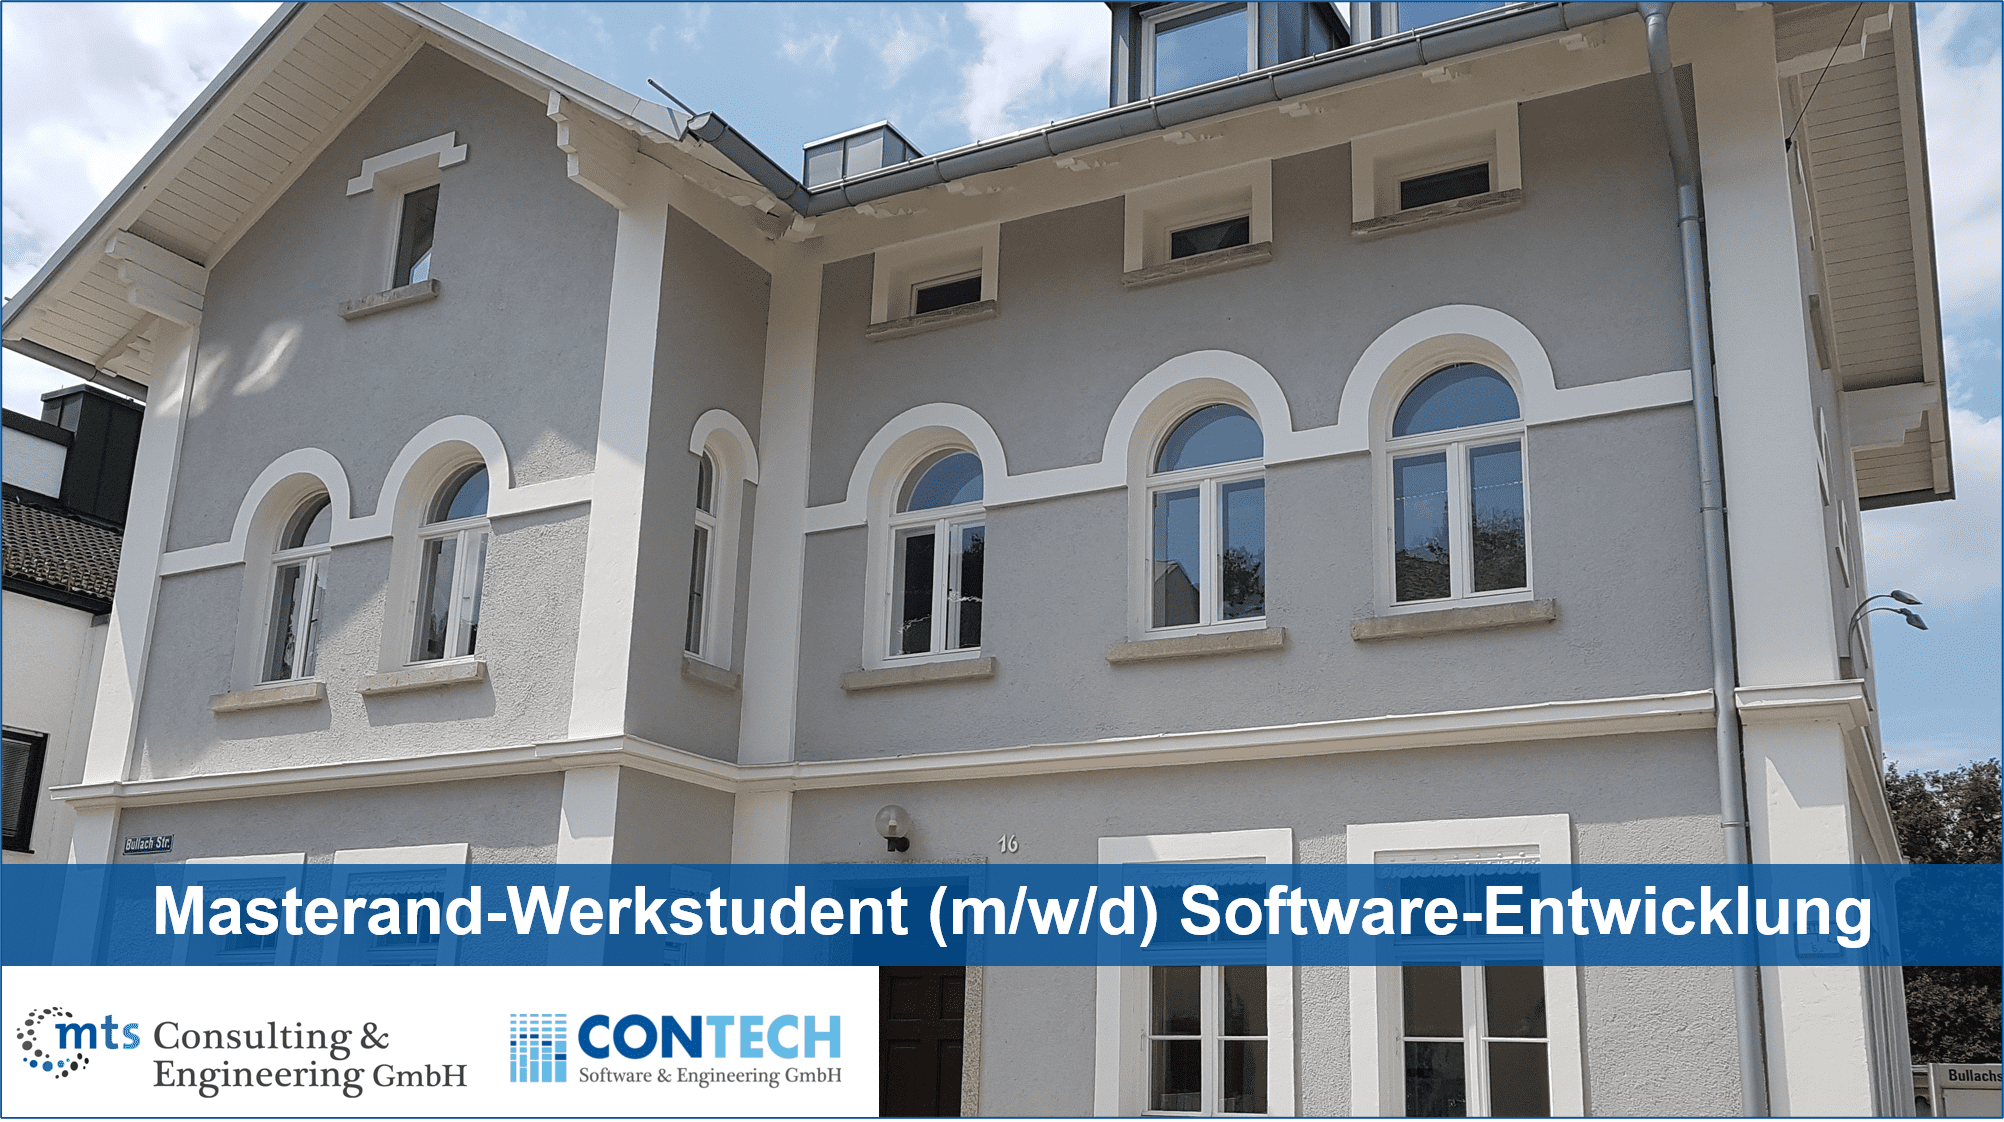 Masterand-Werkstudent (m/w/d) Software-Entwicklung